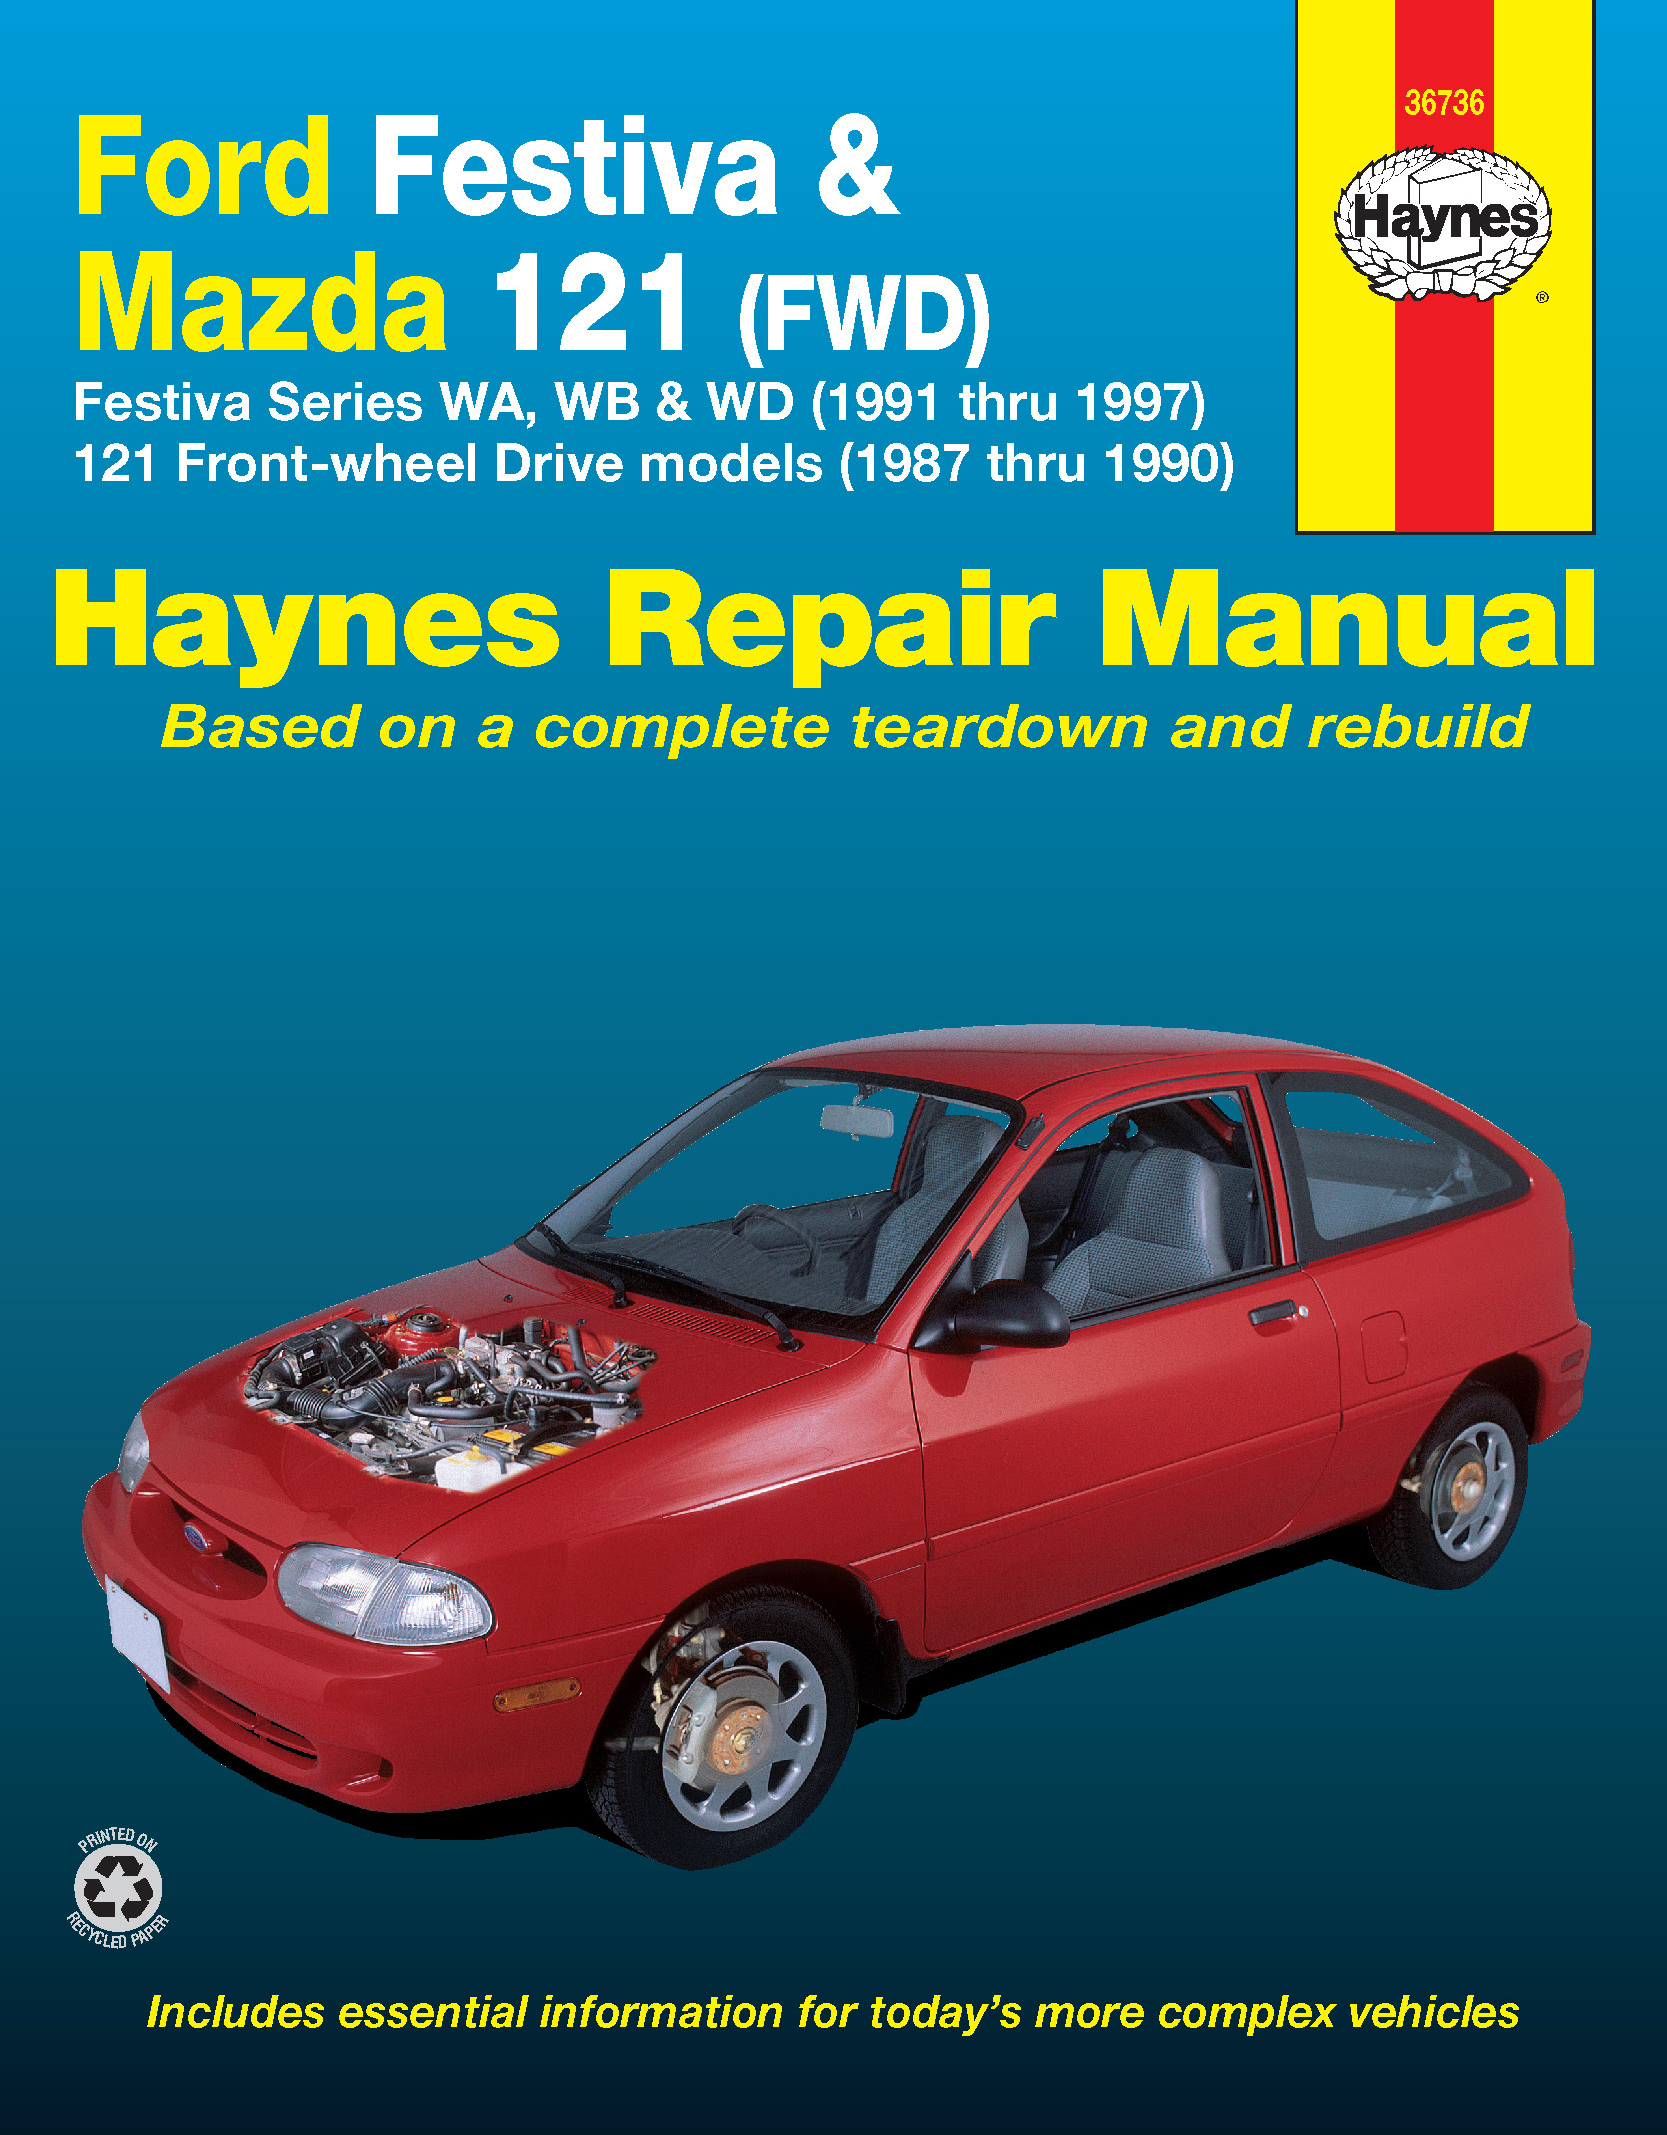 Haynes Repair Manual 36030 Ford Festiva & Aspire 1988-1997 All Models 